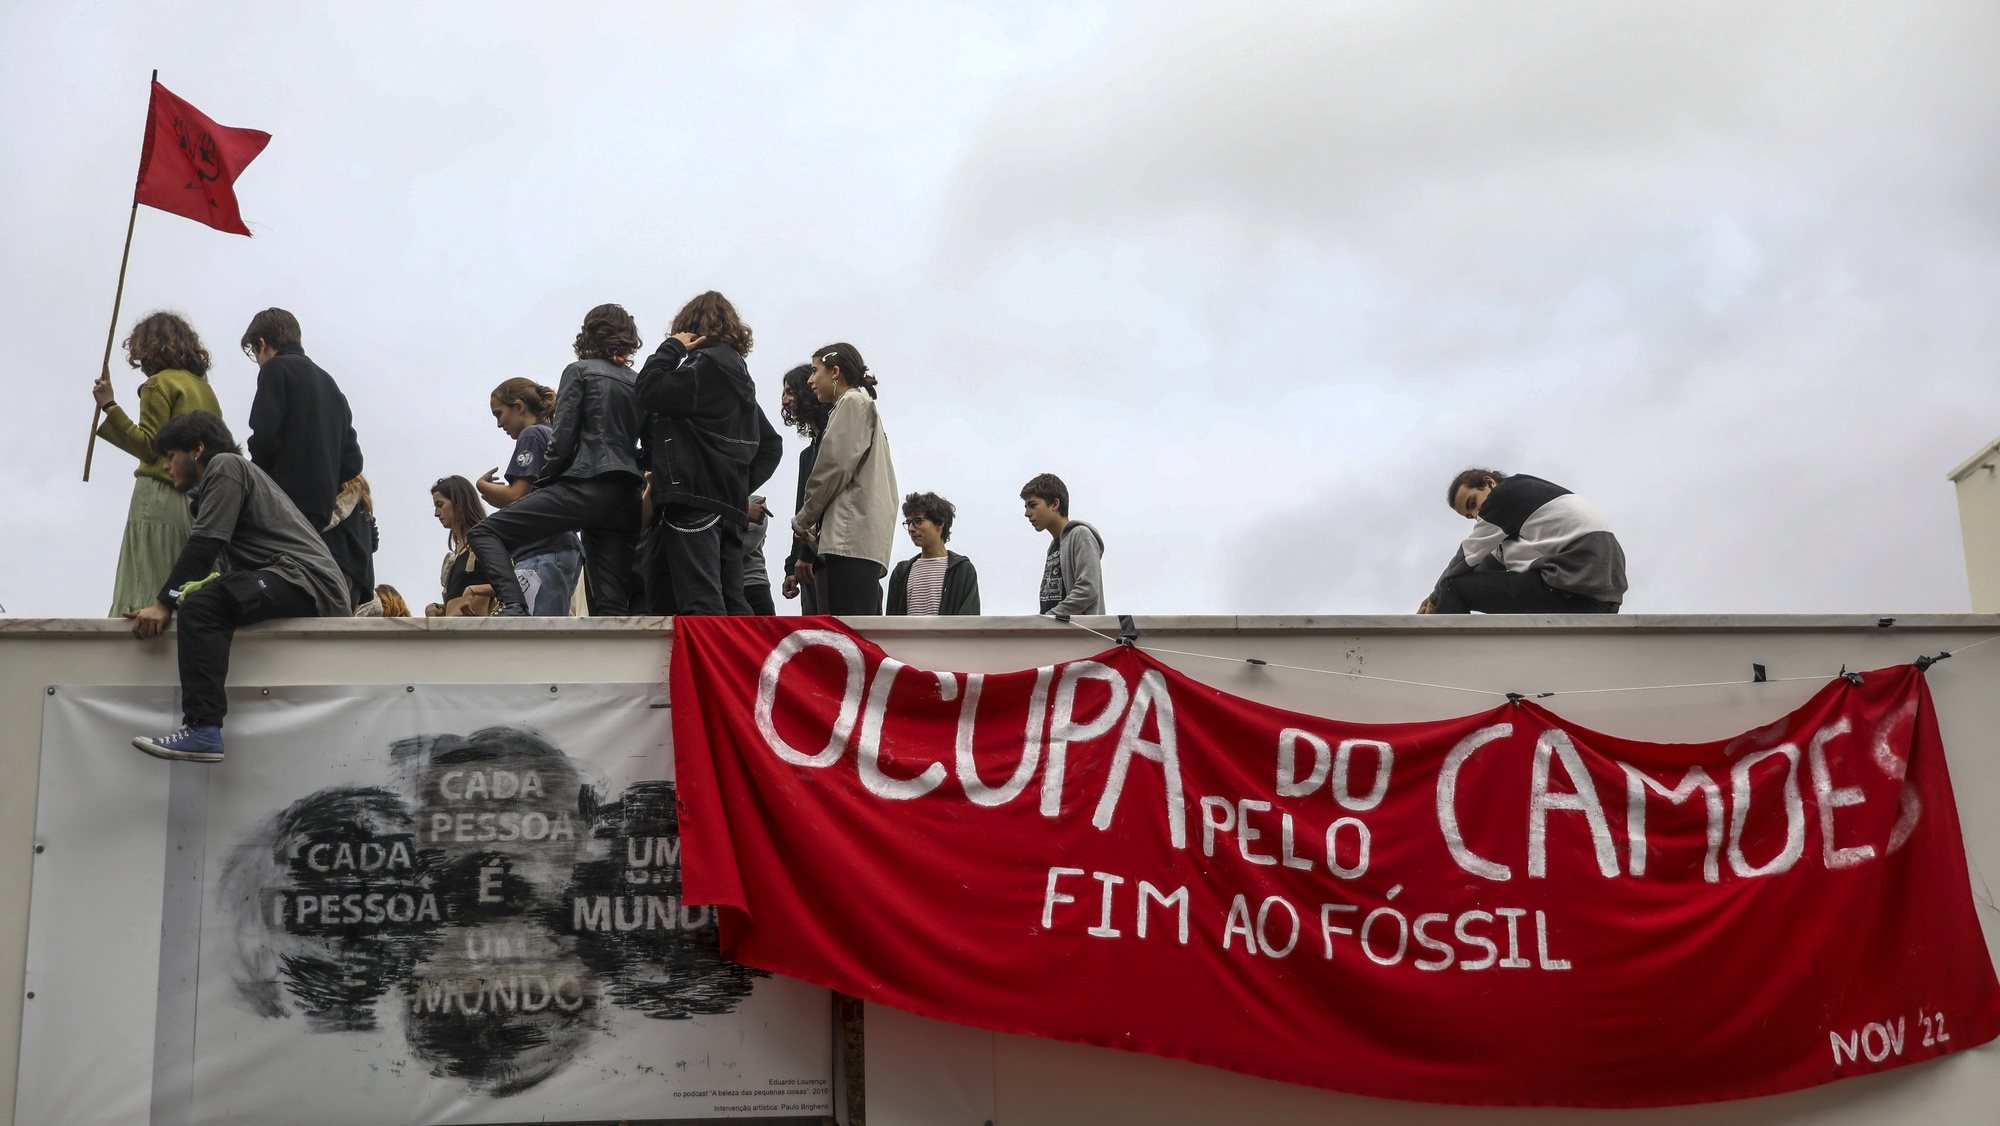 Ativistas climáticos fecharam esta manhã a cadeado dois portões do Liceu Camões, em Lisboa, estando o protesto a decorrer de “forma calma e ordeira”, 14 de novembro de 2022. ANDRÉ KOSTERS/LUSA